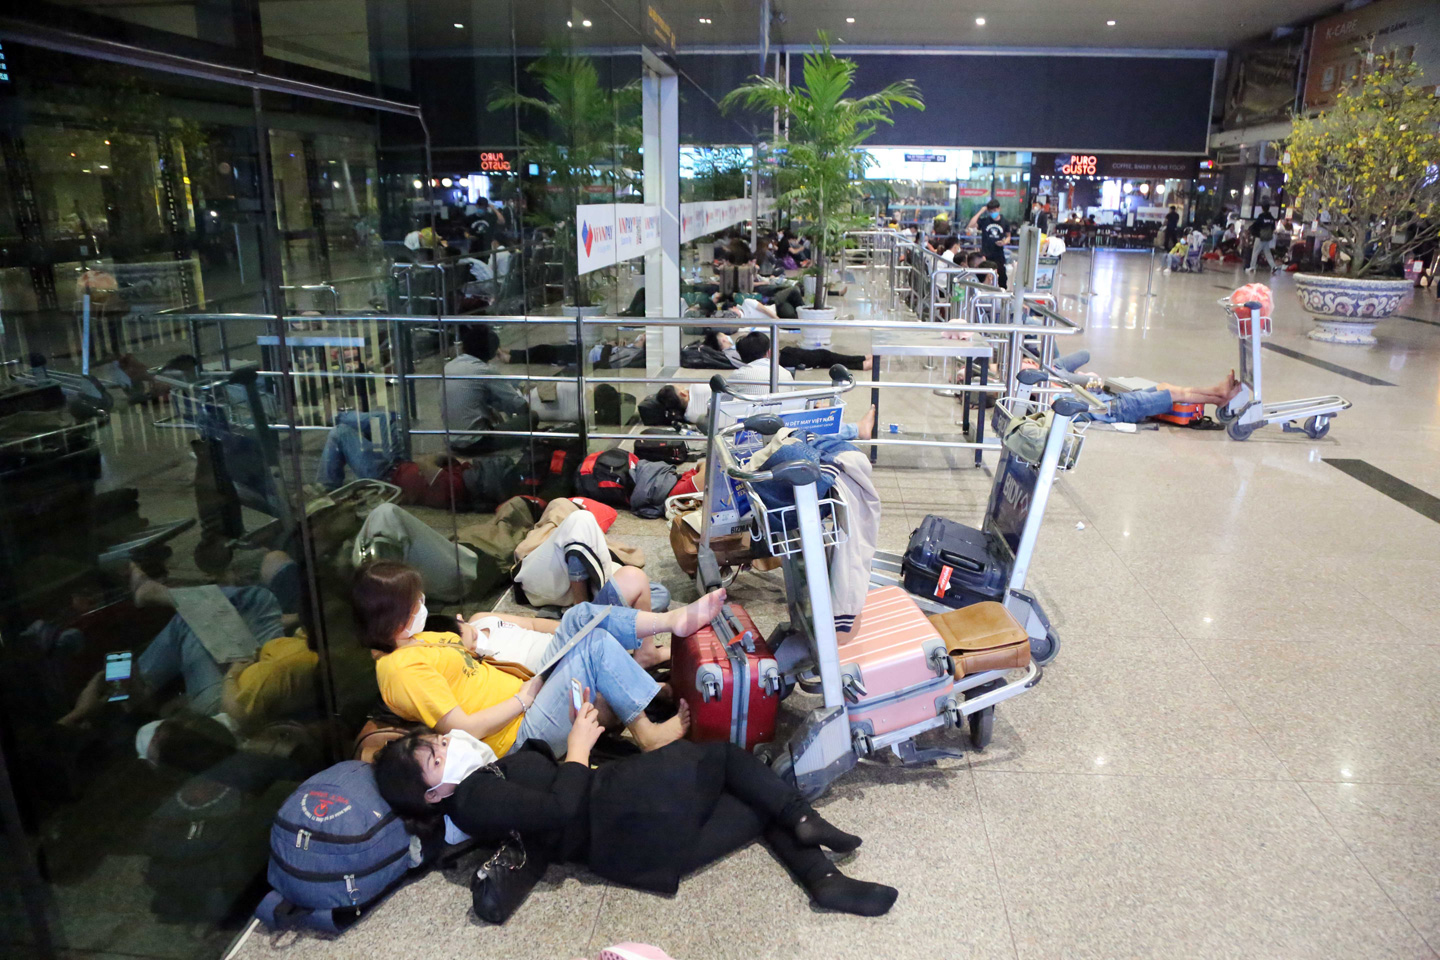 Ảnh: Sân bay Tân Sơn Nhất nghẹt người, khách nằm dài giữa nhà ga cả đêm chờ chuyến bay - 18